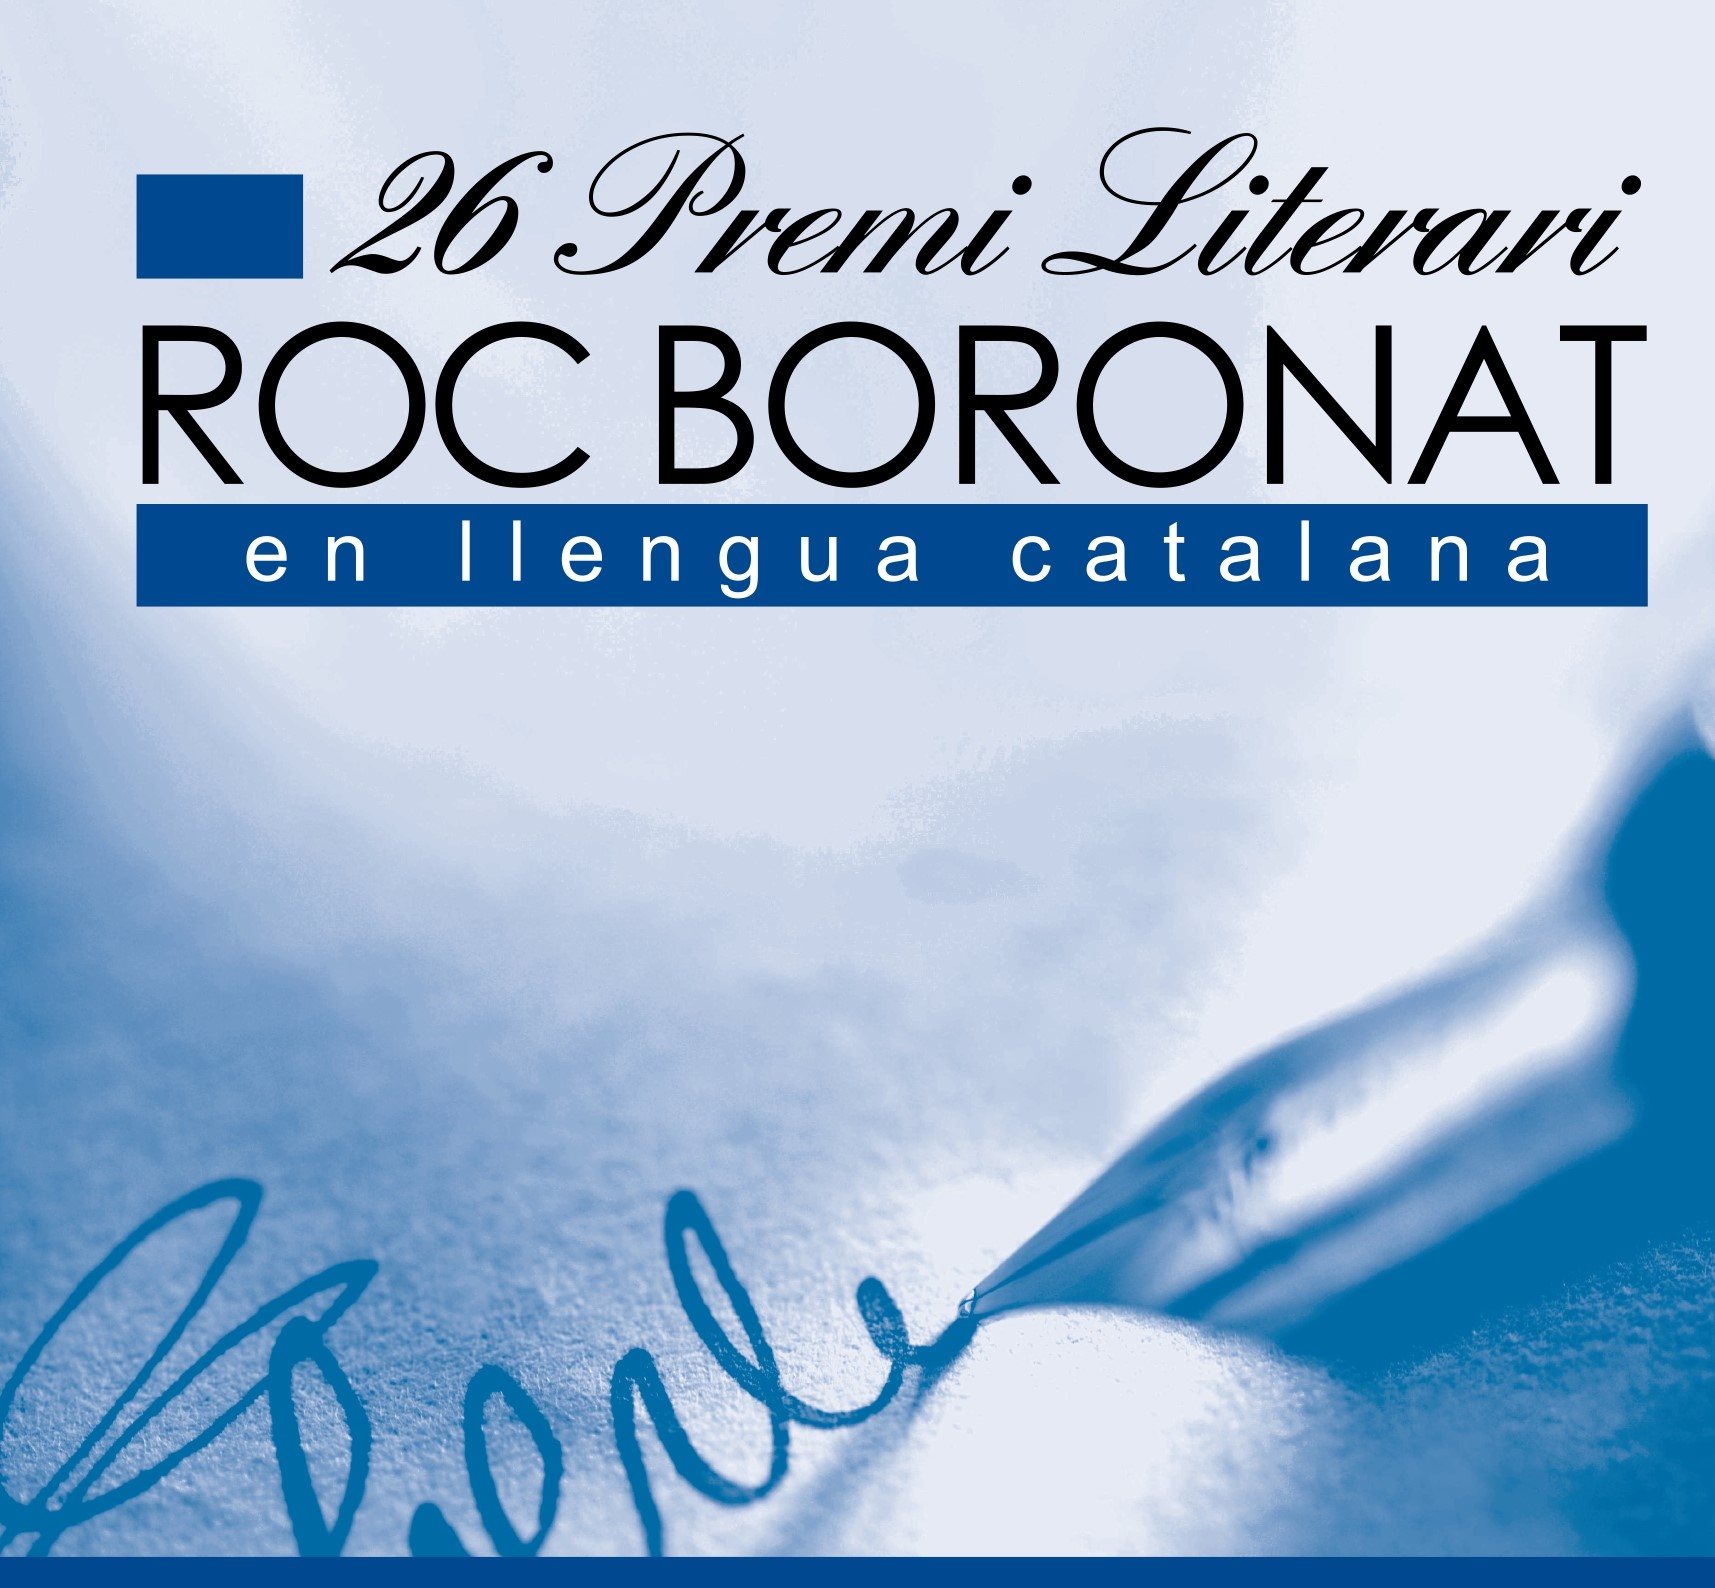 Imatge del cartell del 26 Premis Roc Boronat, sobre fons blau.